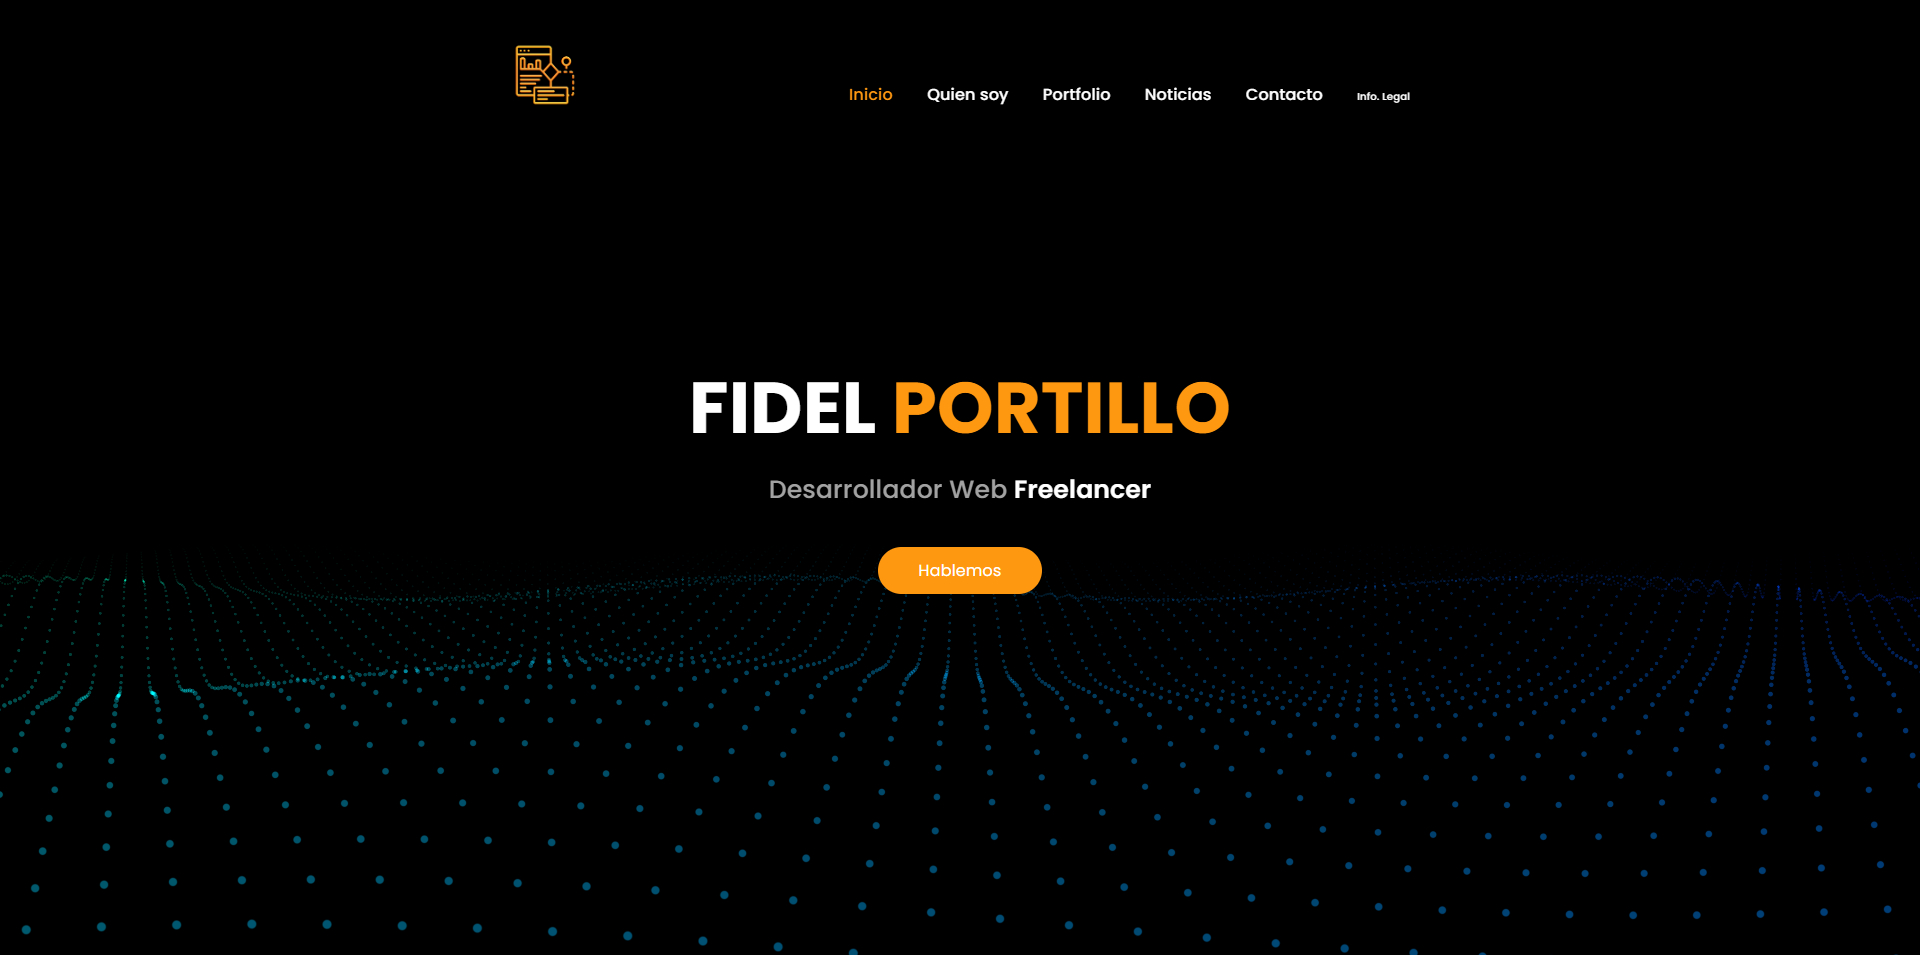 (c) Fidelportillo.com